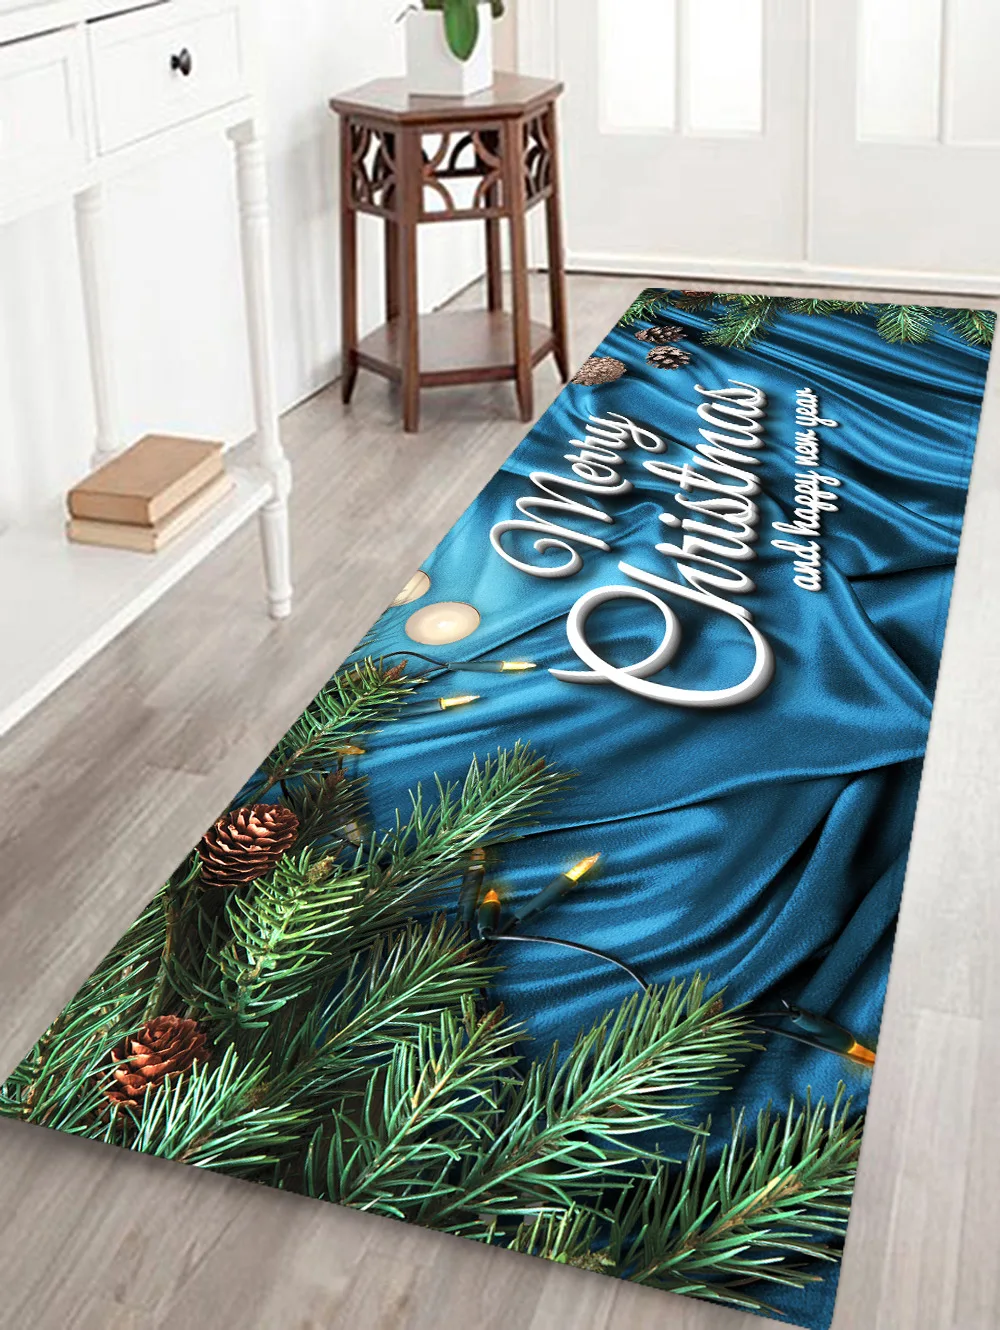 Коврик с рождественским дизайном коврики домашние ковры Санта-Клаус противоскользящие кухня столовая камин коврик Рождественское украшение для дома